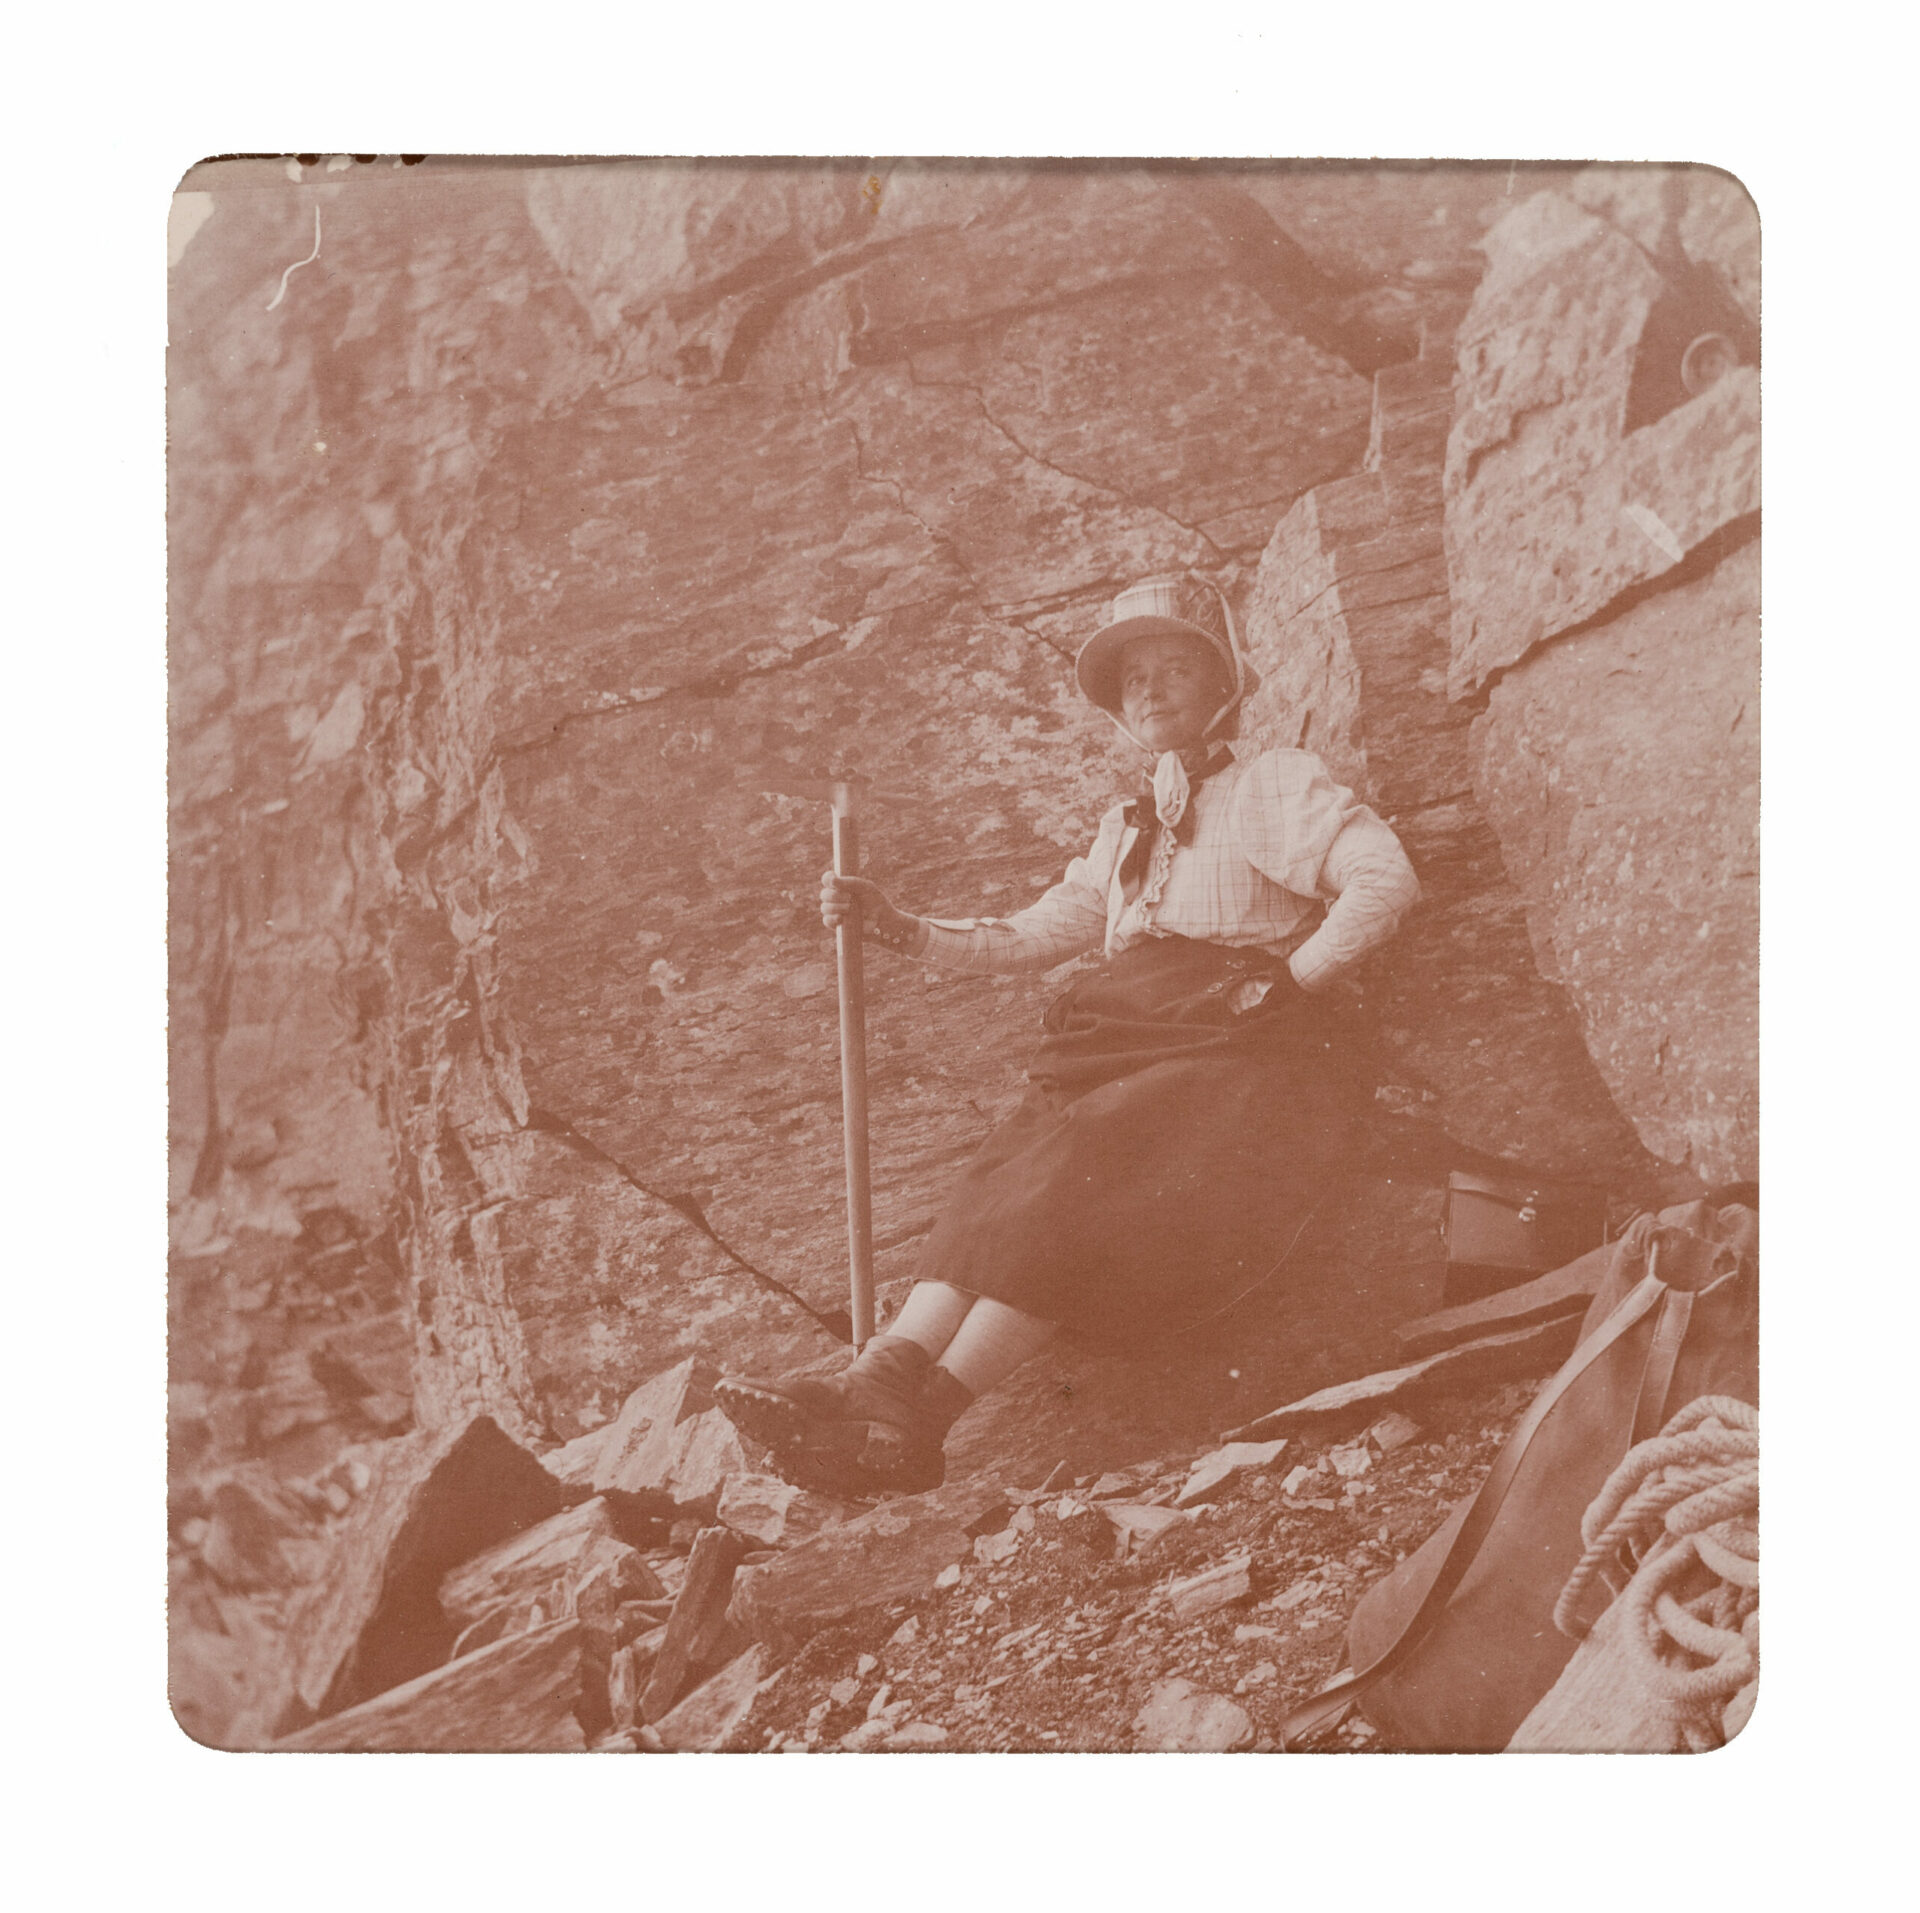 Elisabeth Winterhalter rastend bei Aufstieg auf den Piz de la Margna, Oberengadin, Schweiz, 28. August 1898, Fotografie